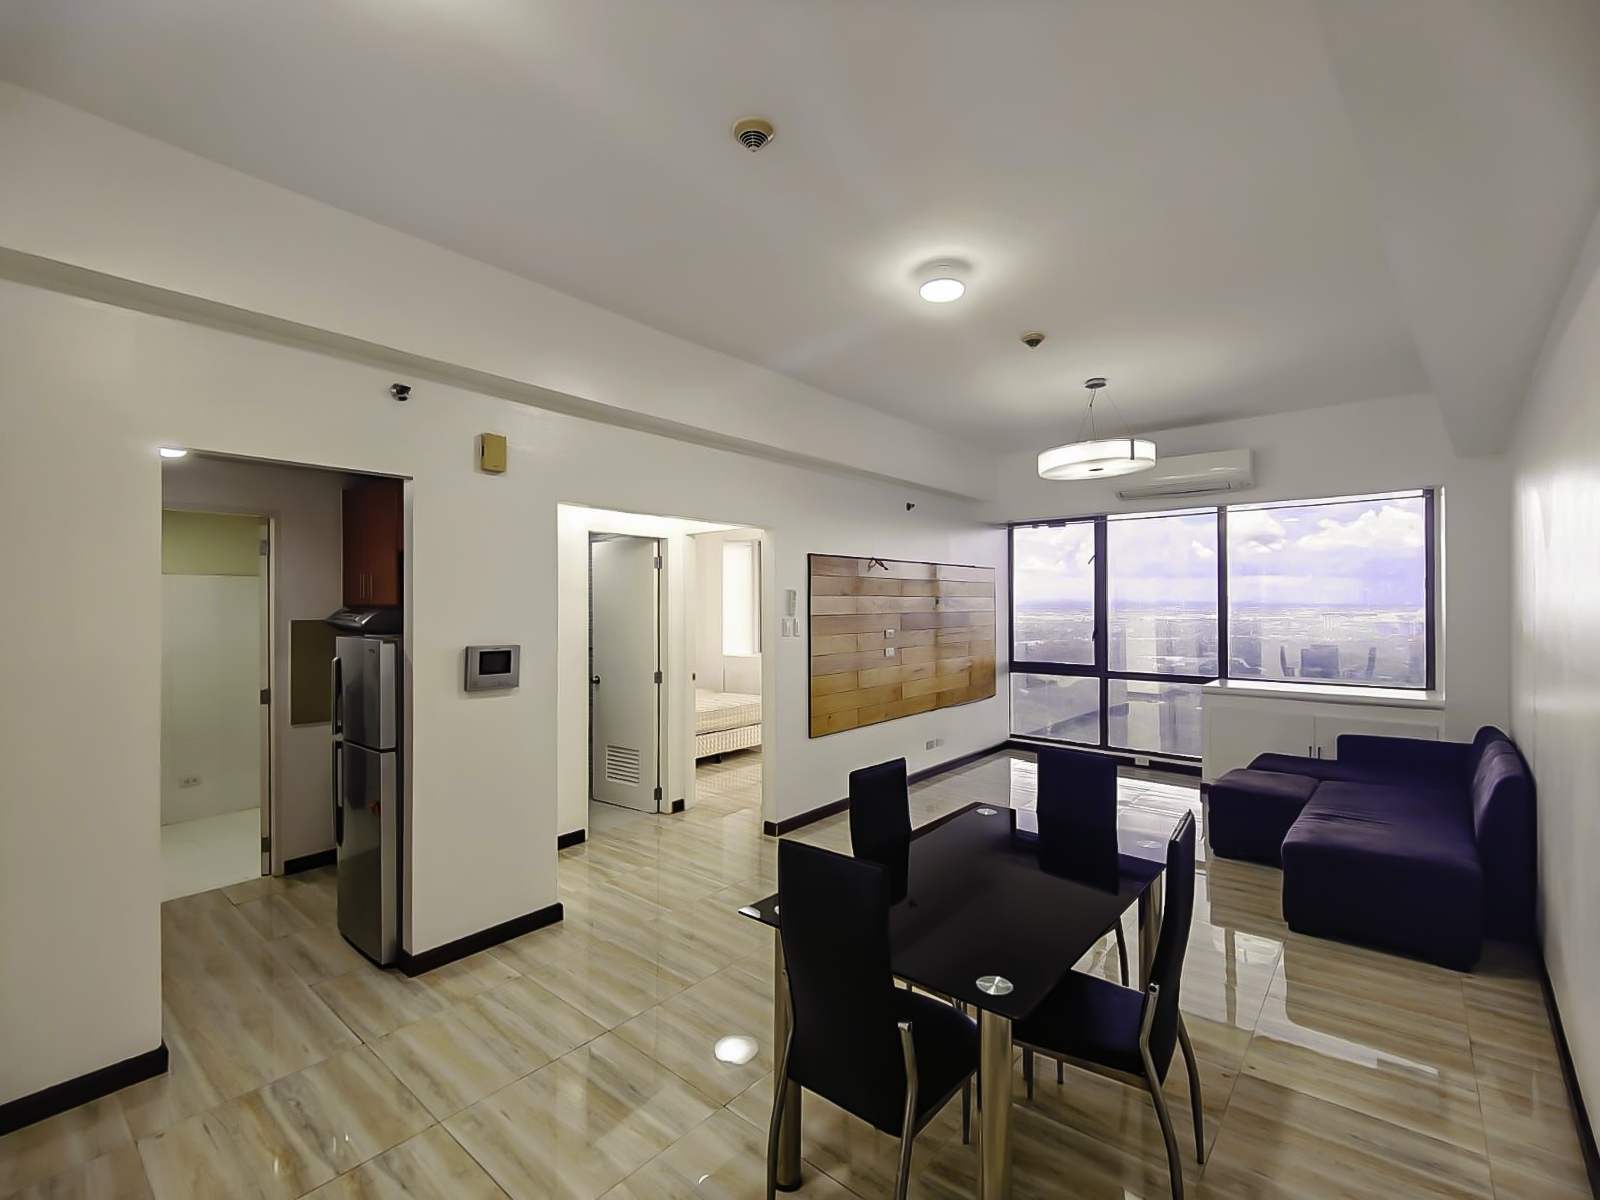 For Rent, 1 Bedroom Condominium in Bellagio 3 along BGC, Taguig